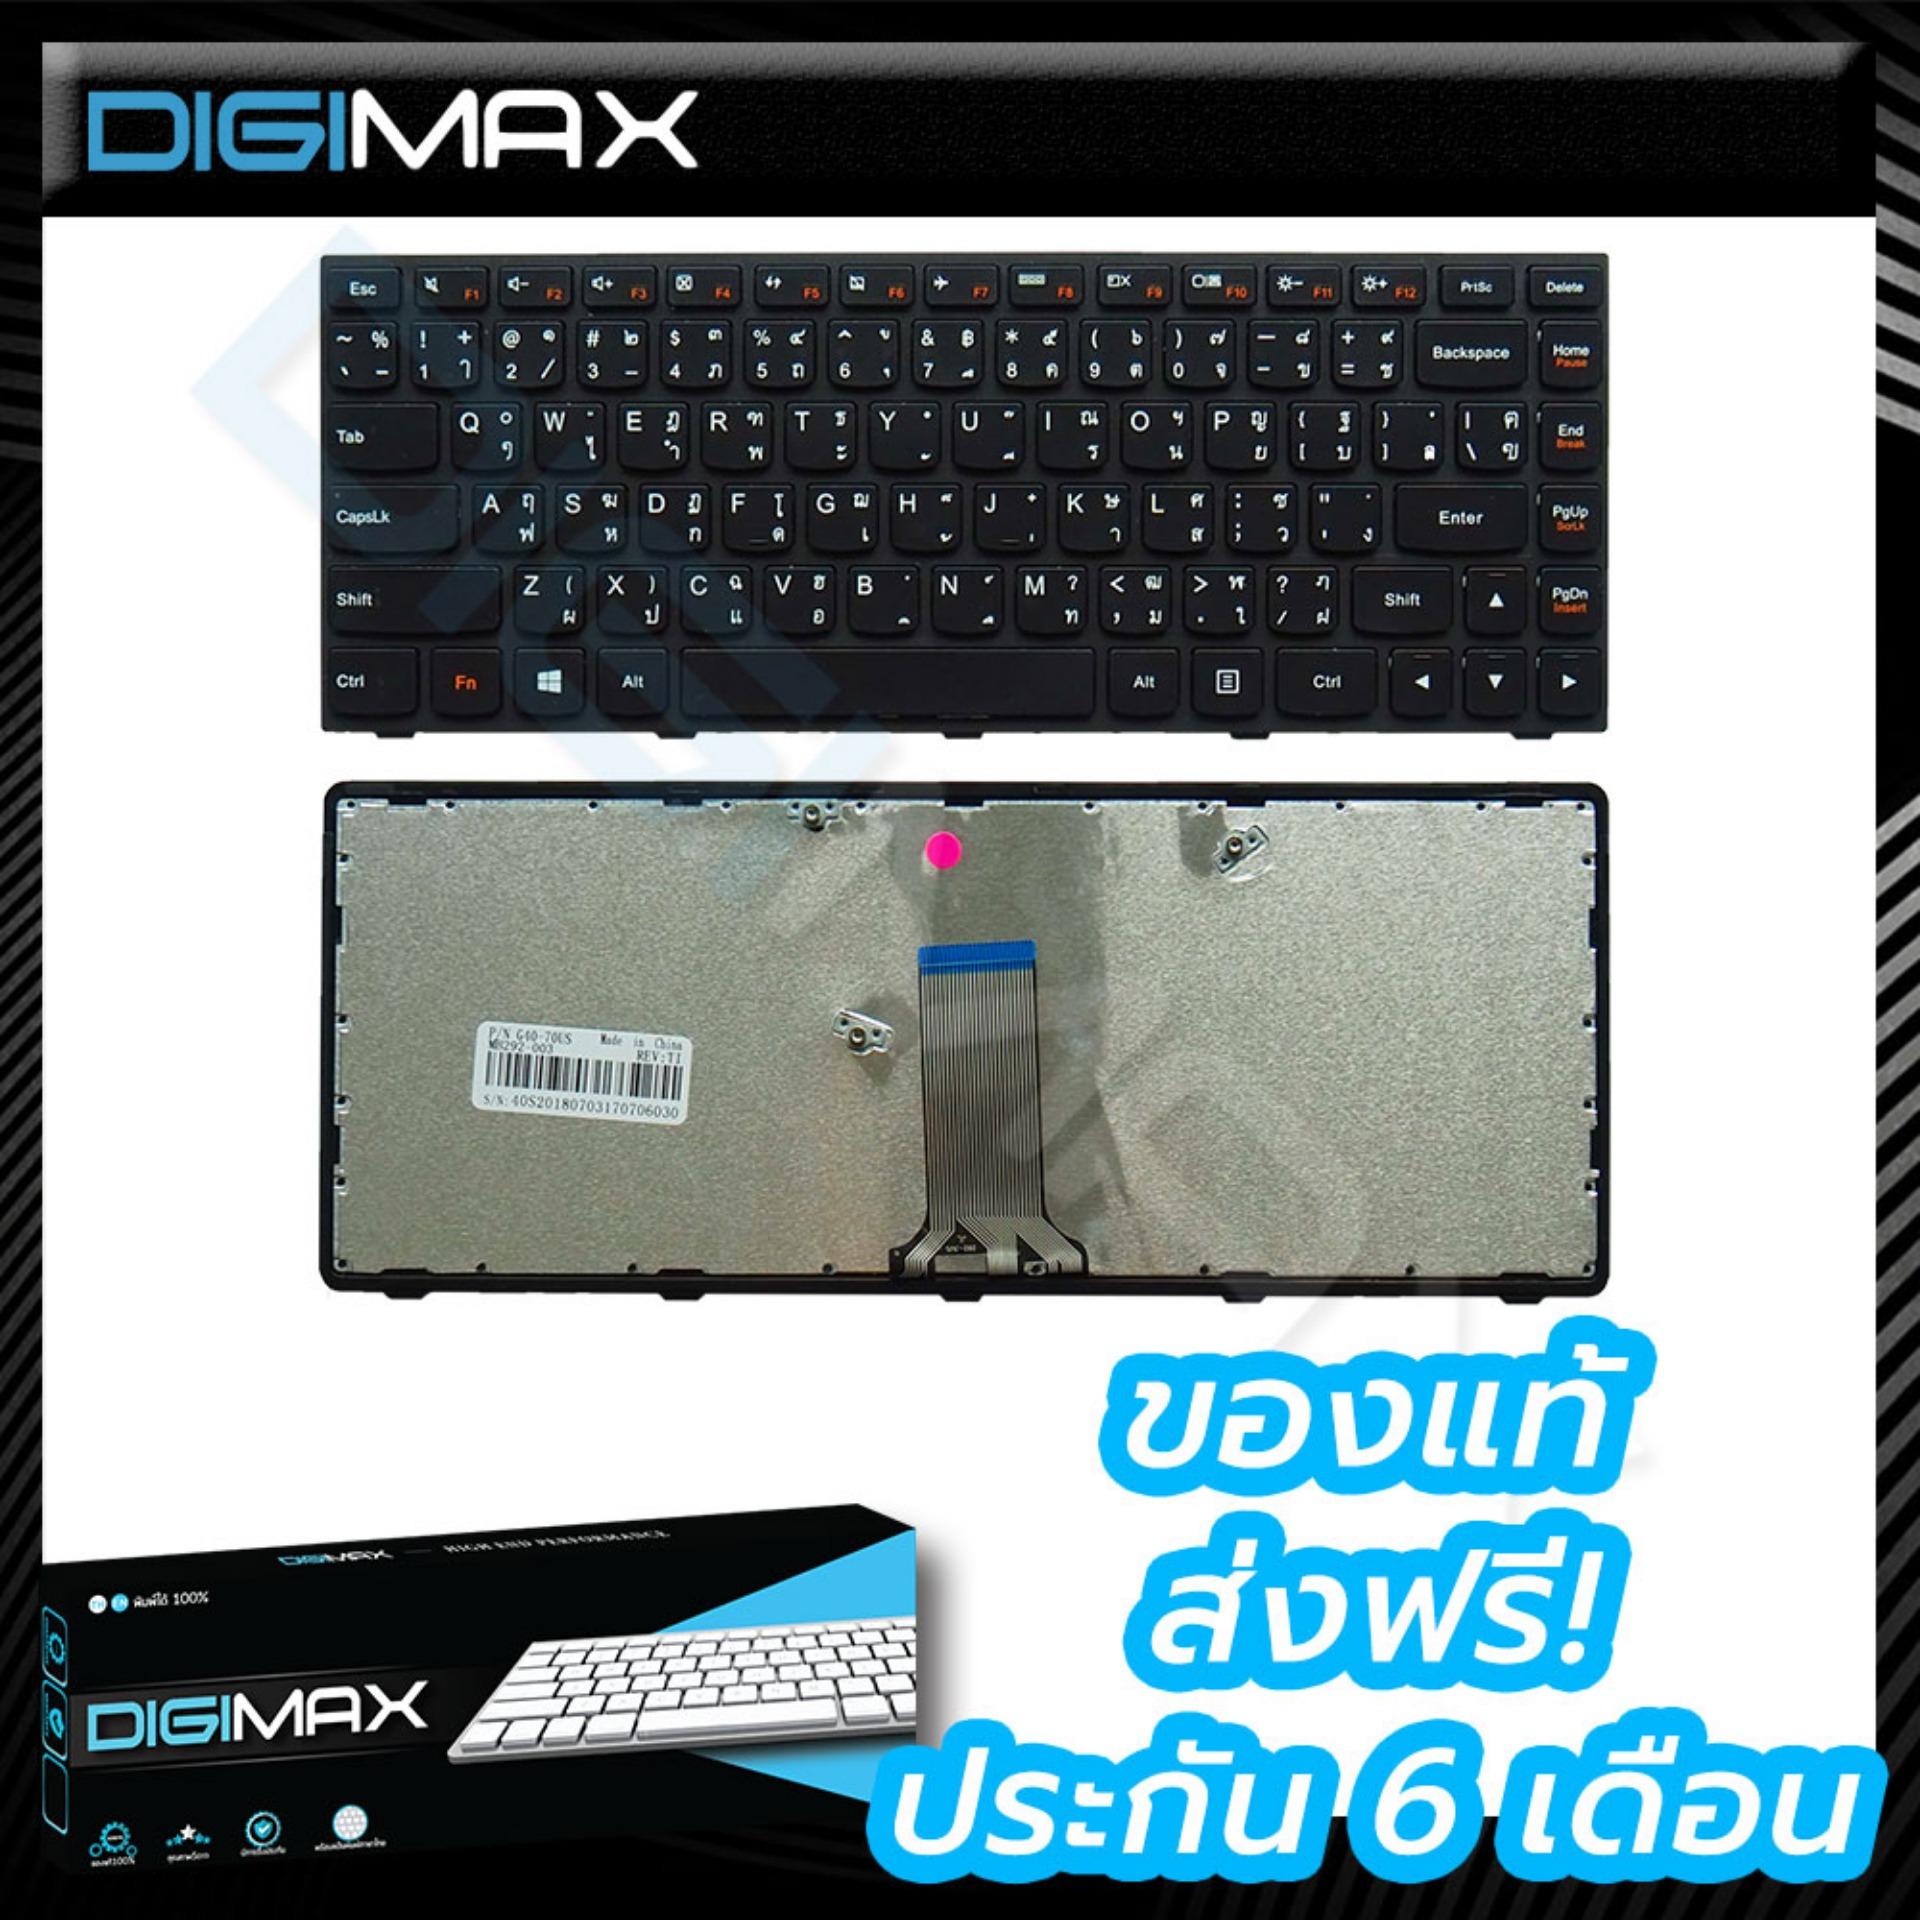 Lenovo Notebook Keyboard คีย์บอร์ดโน๊ตบุ๊ค Digimax ของแท้ // รุ่น G40-70 G40-75 G40-80 G40-30 G40-45 B40-70 B40-30 B40-45 Z40-70 Z40-75 / G4030 G4045 และอีกหลายรุ่น (Thai – English Keyboard)***กรุณาเลือกขอบก่อนสั่งซื้อ***